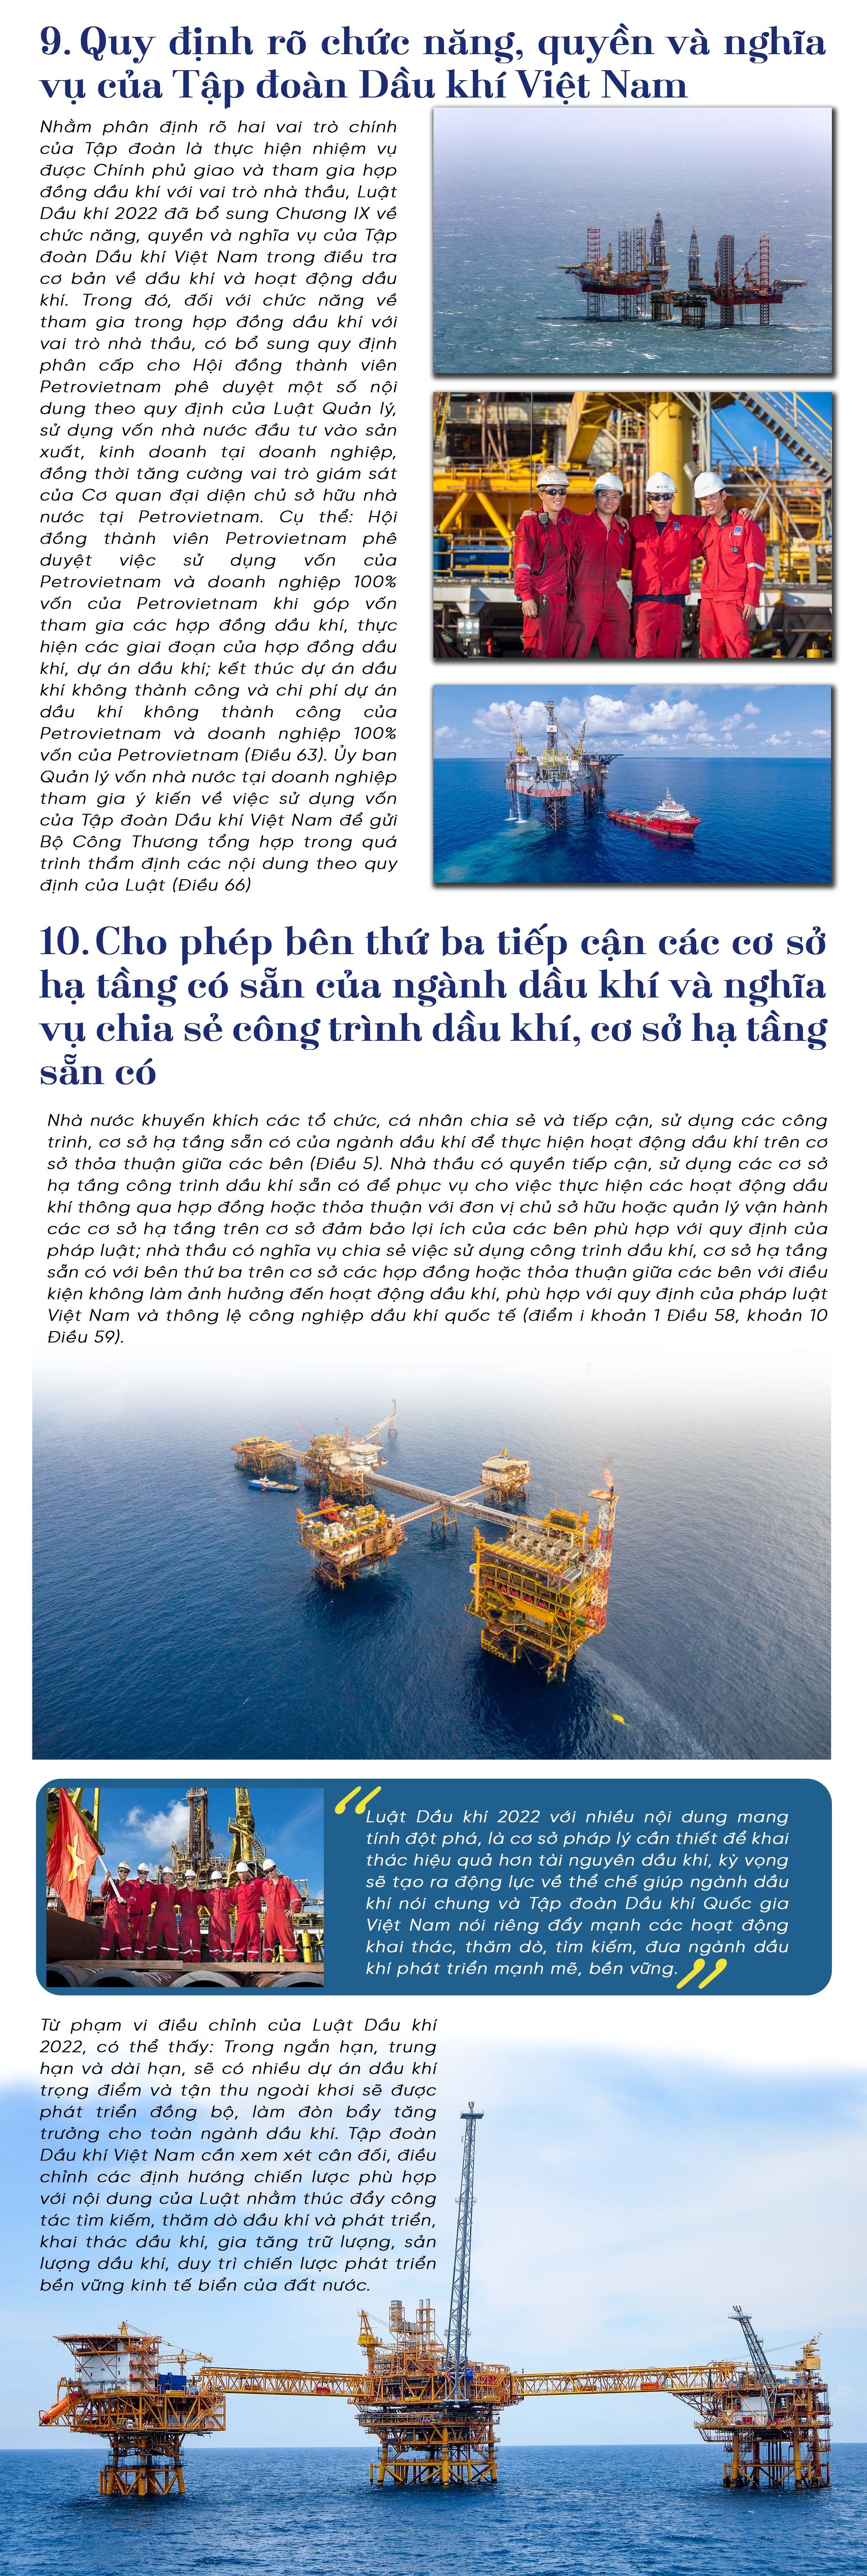 [E-Magazine] Luật Dầu khí 2022: Tạo điều kiện thuận lợi hơn cho hoạt động thăm dò khai thác dầu khí